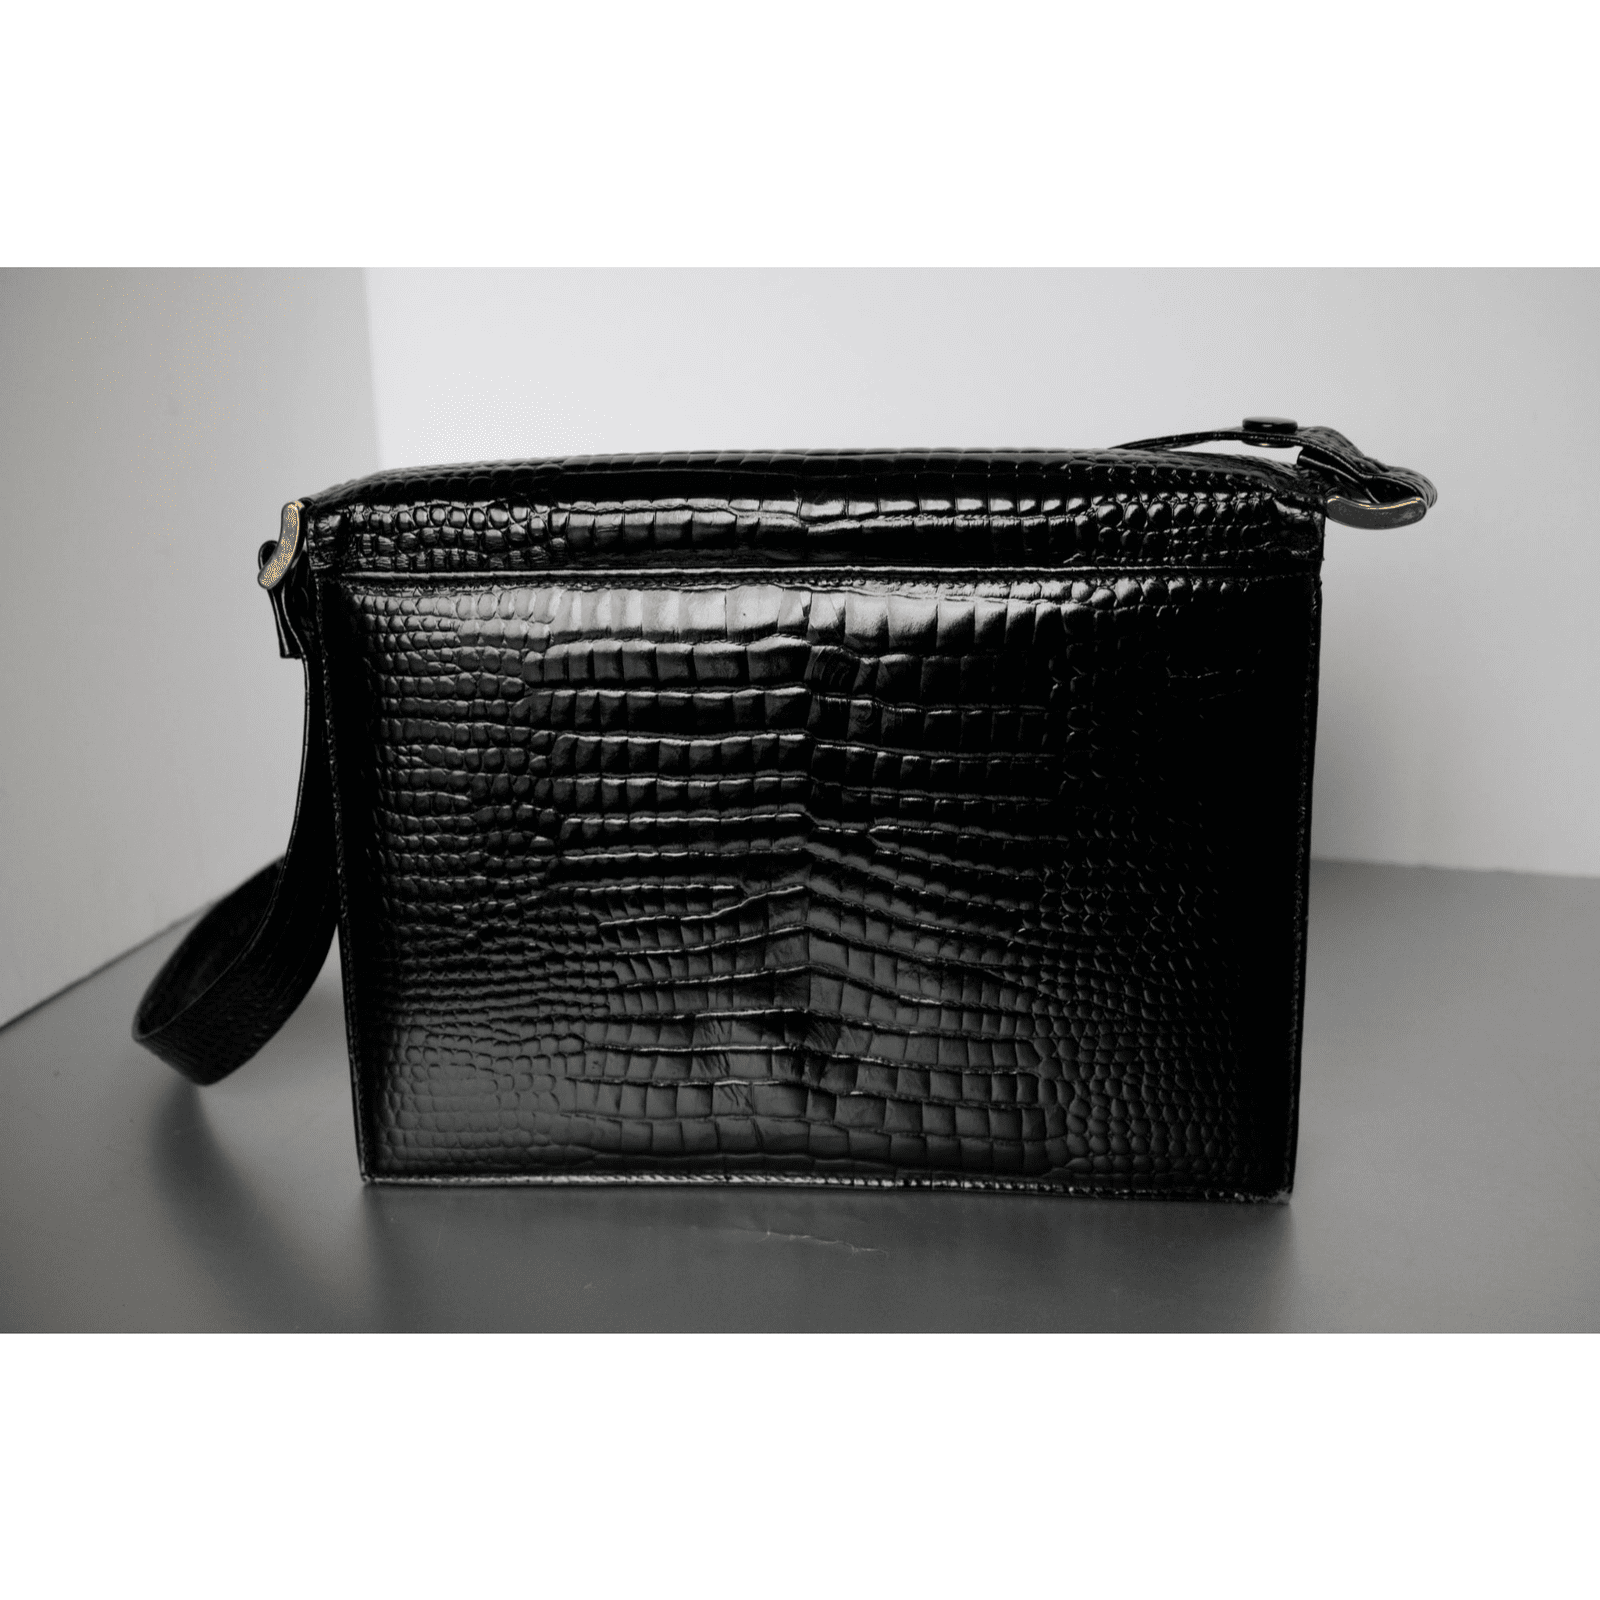 Harrods Black Leather Handbag Wonderful Classic Vintage Purse